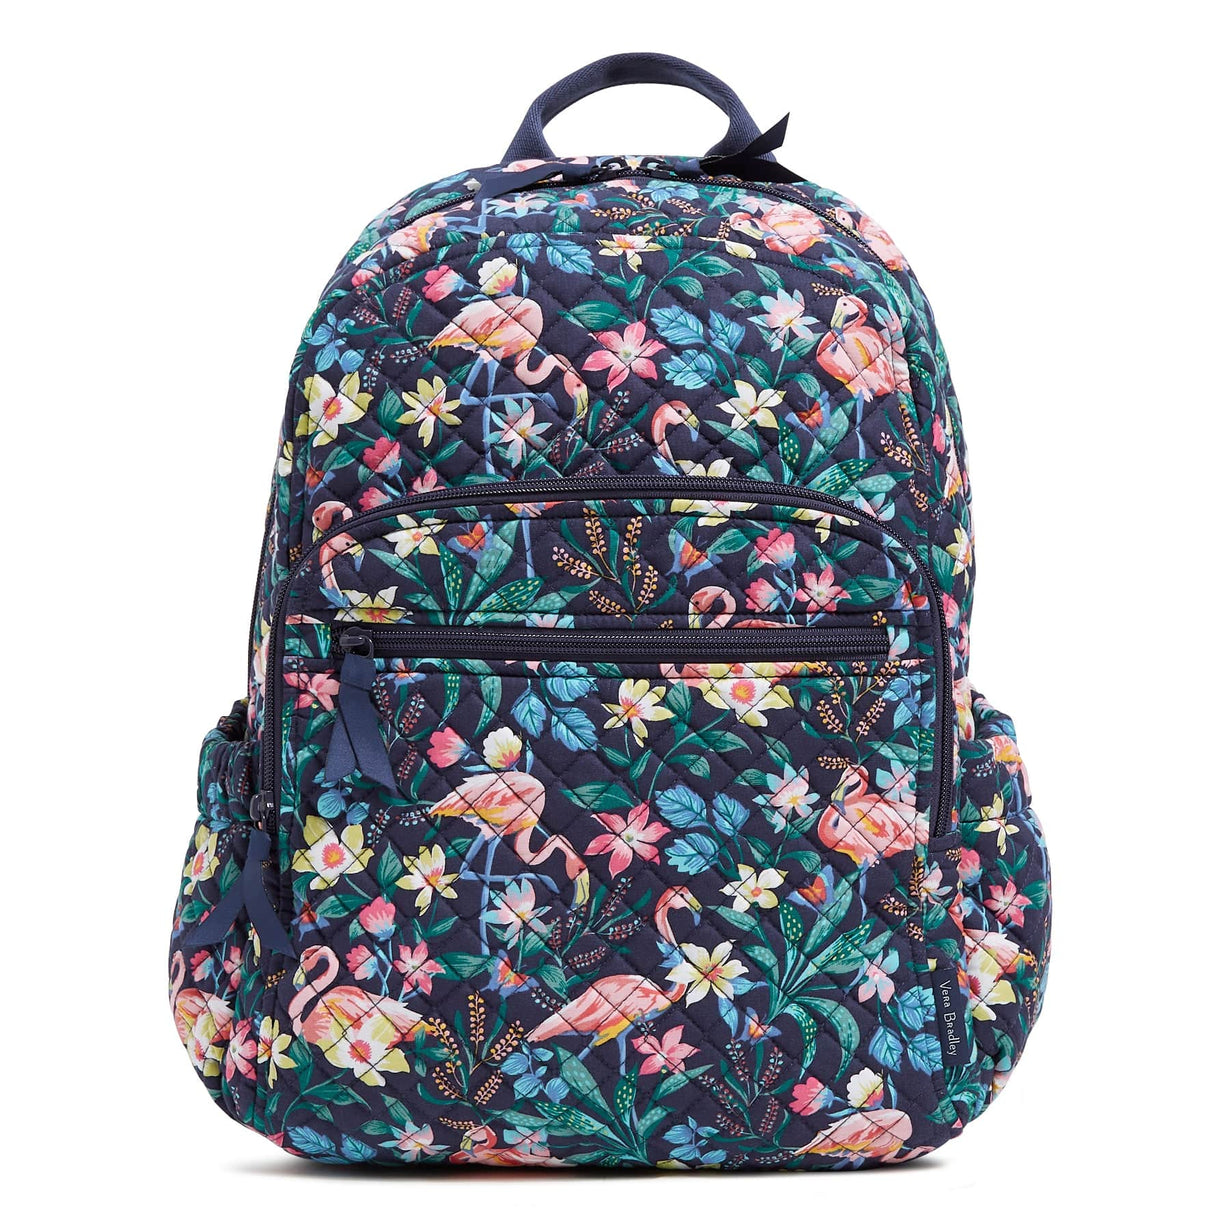 Campus Backpack : Flamingo Garden - Vera Bradley - Image 1